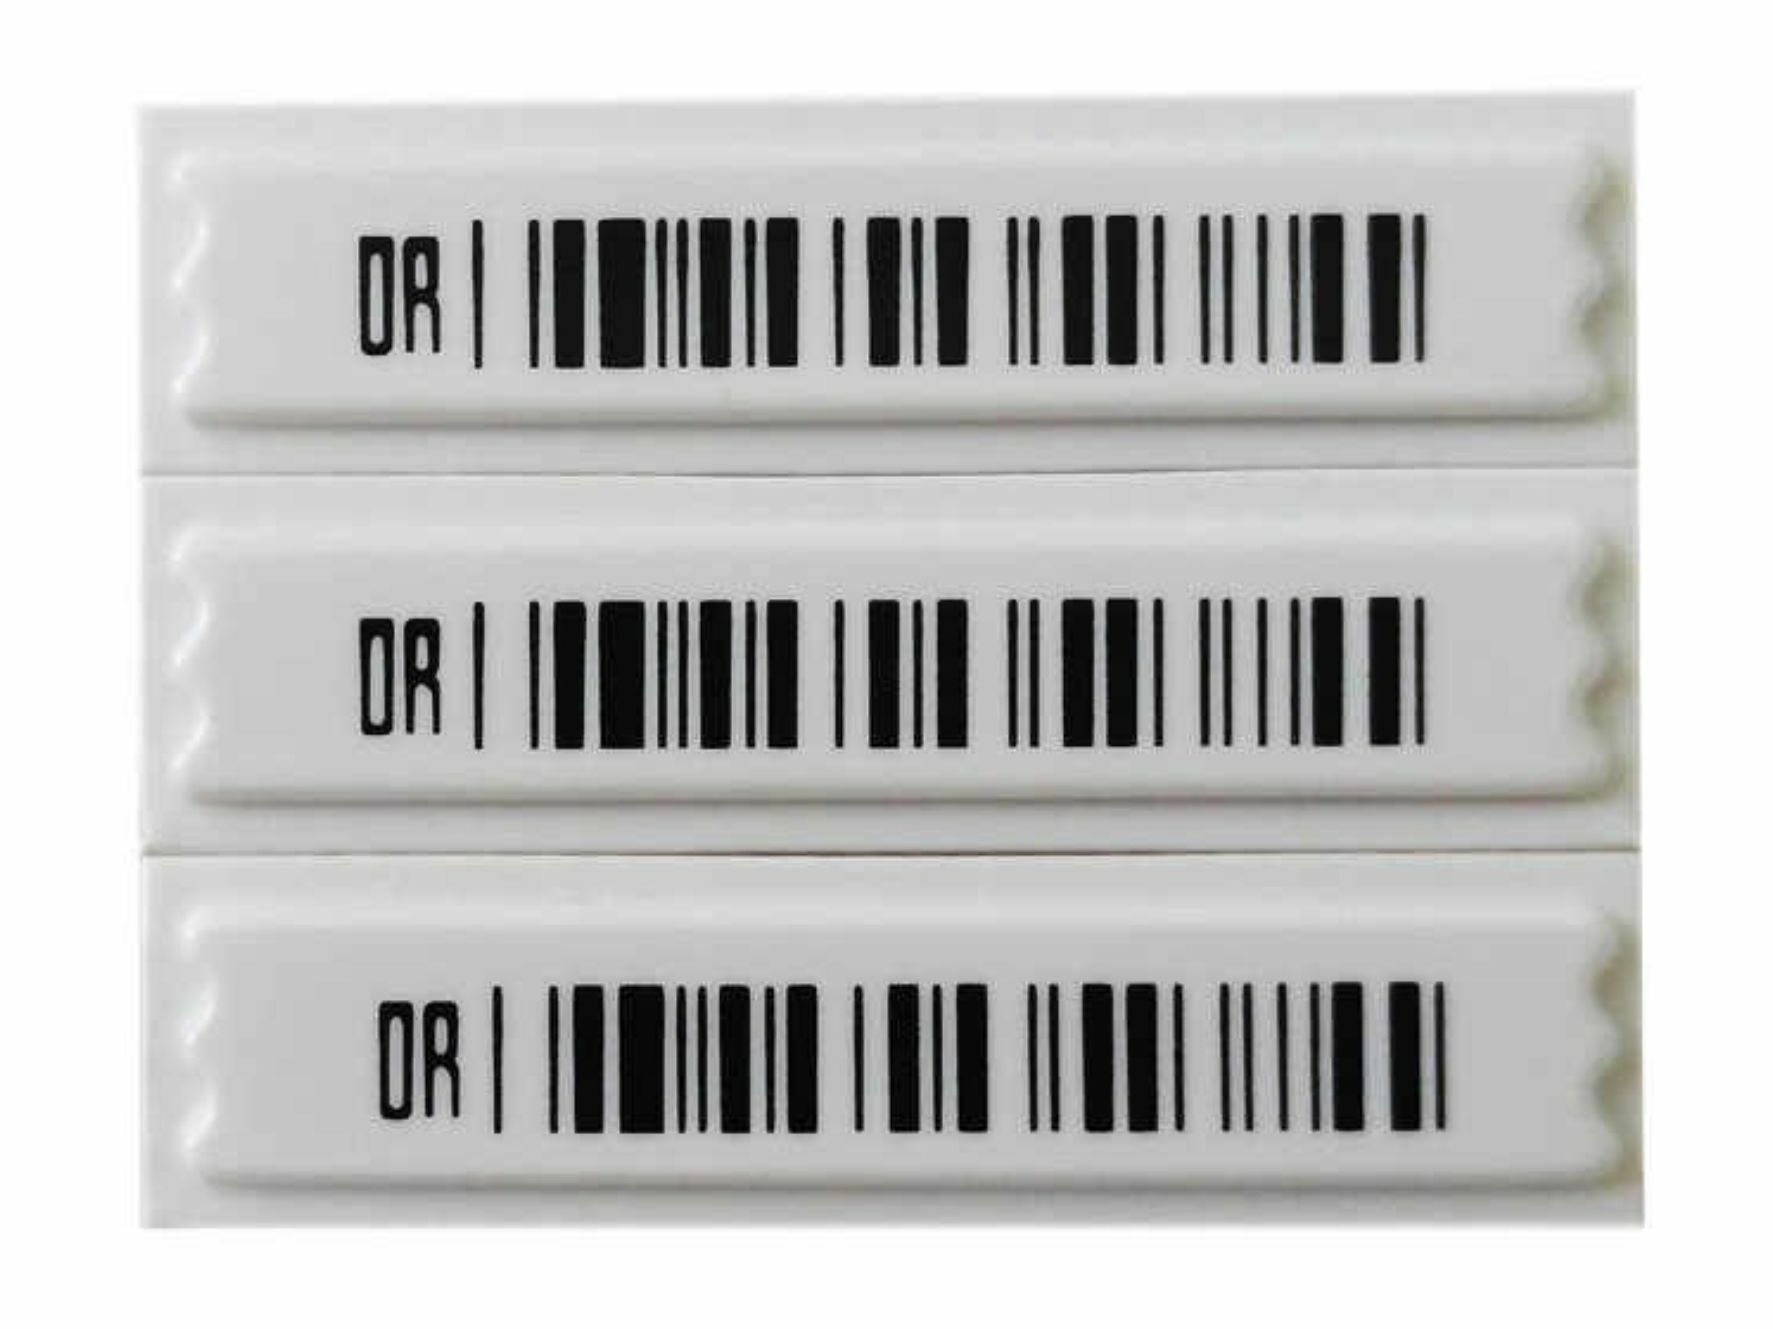 AM Klebeetiketten barcode 58kHz Sicherungsetiketten Warensicherung Klebeetikett 